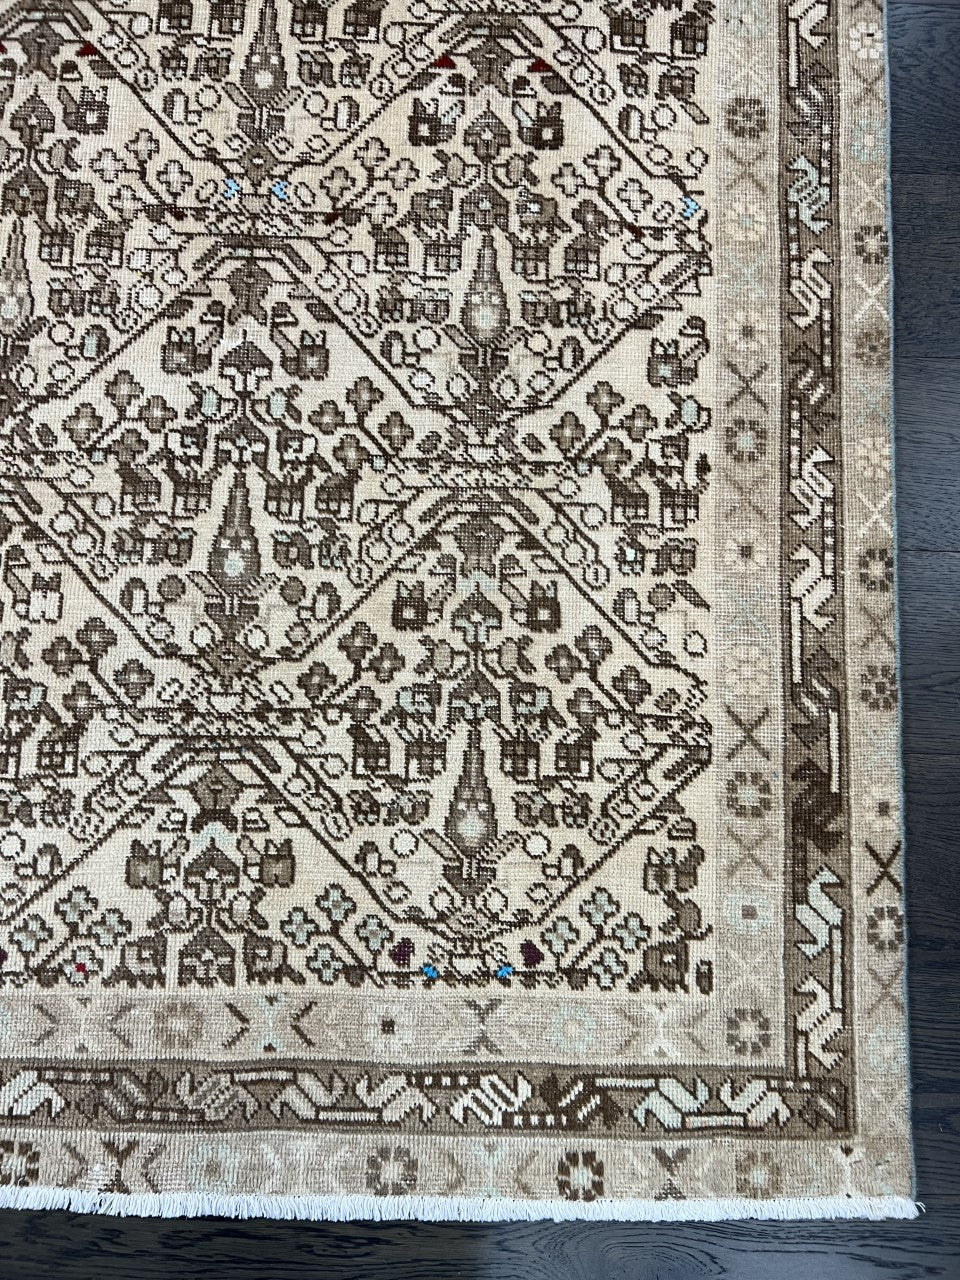 Wonderful vintage Afshar rug - Hakiemie Rug Gallery